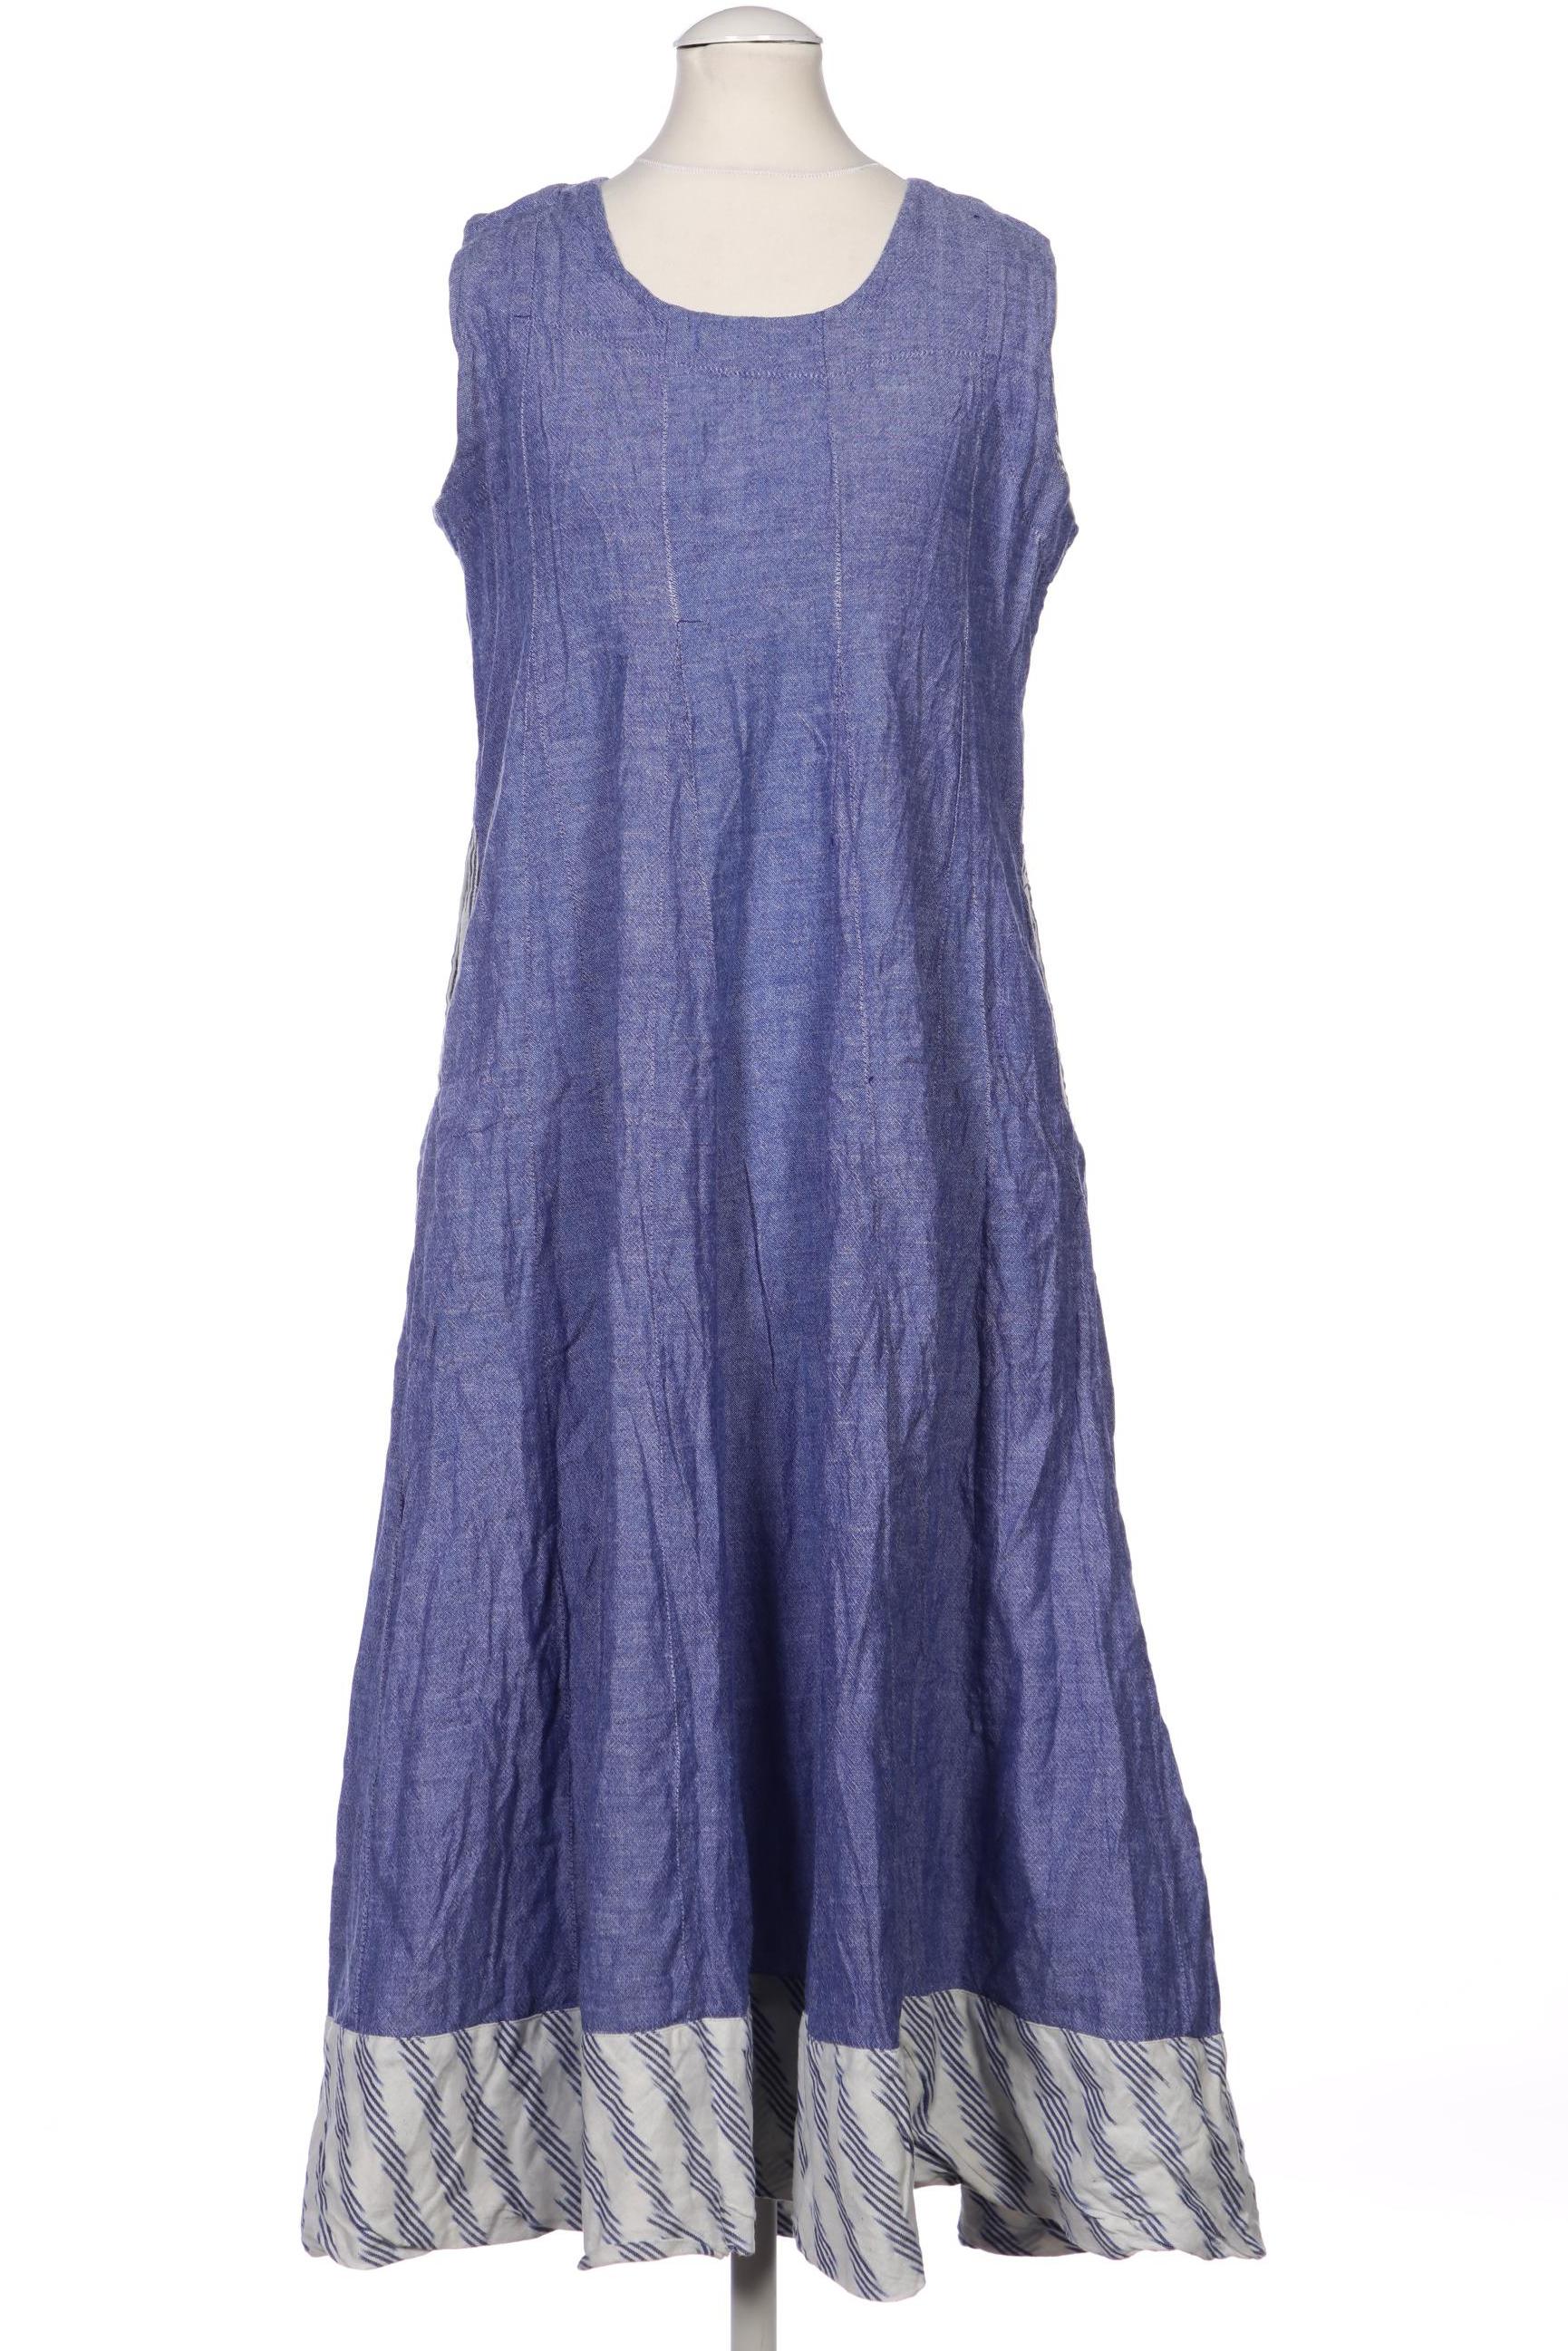 BiBA Damen Kleid, blau, Gr. 34 von BiBA